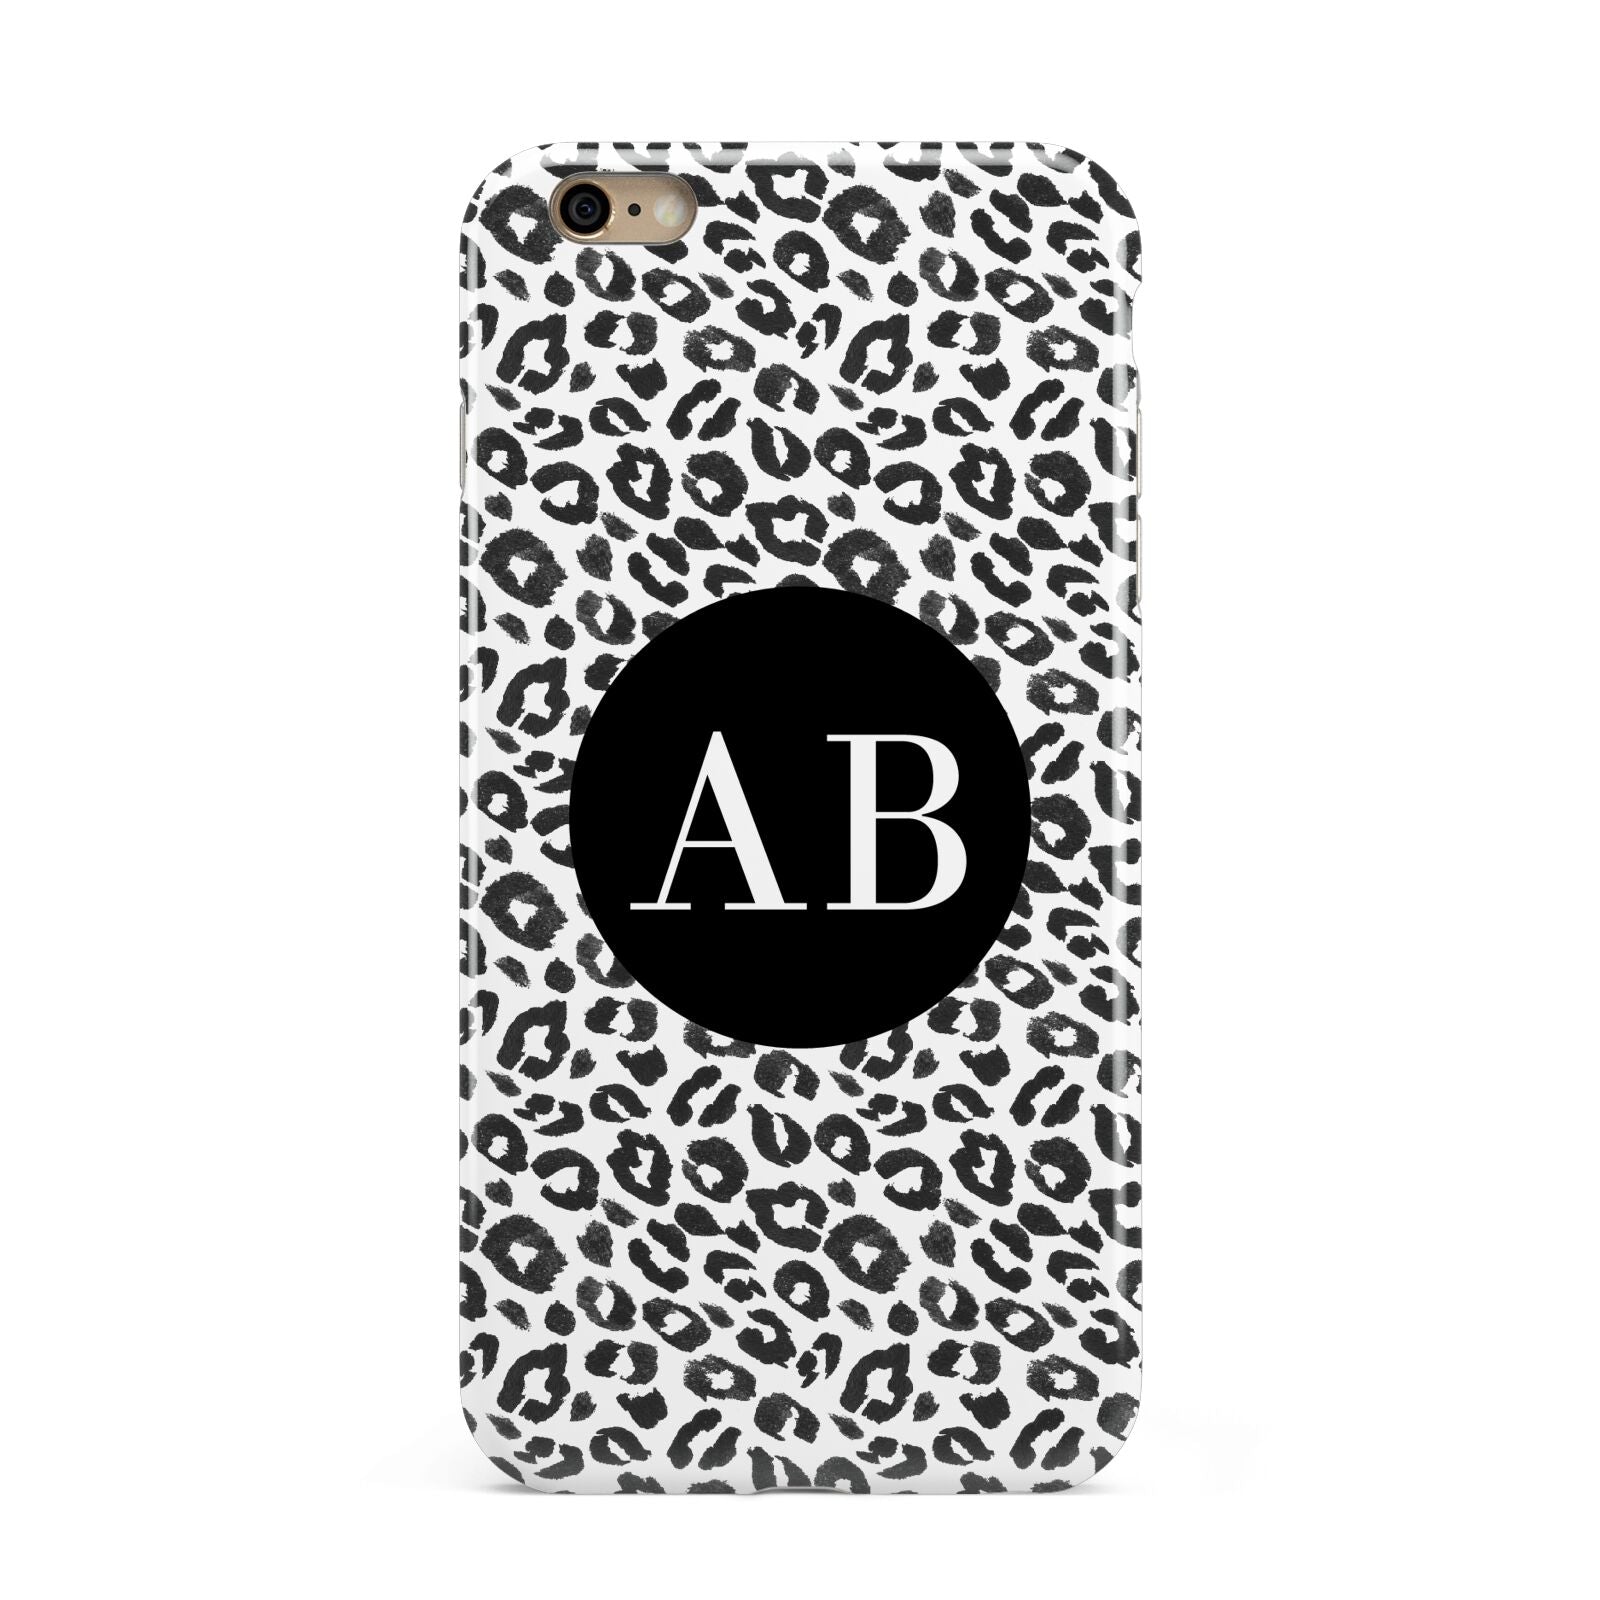 Leopard Print Black and White Apple iPhone 6 Plus 3D Tough Case